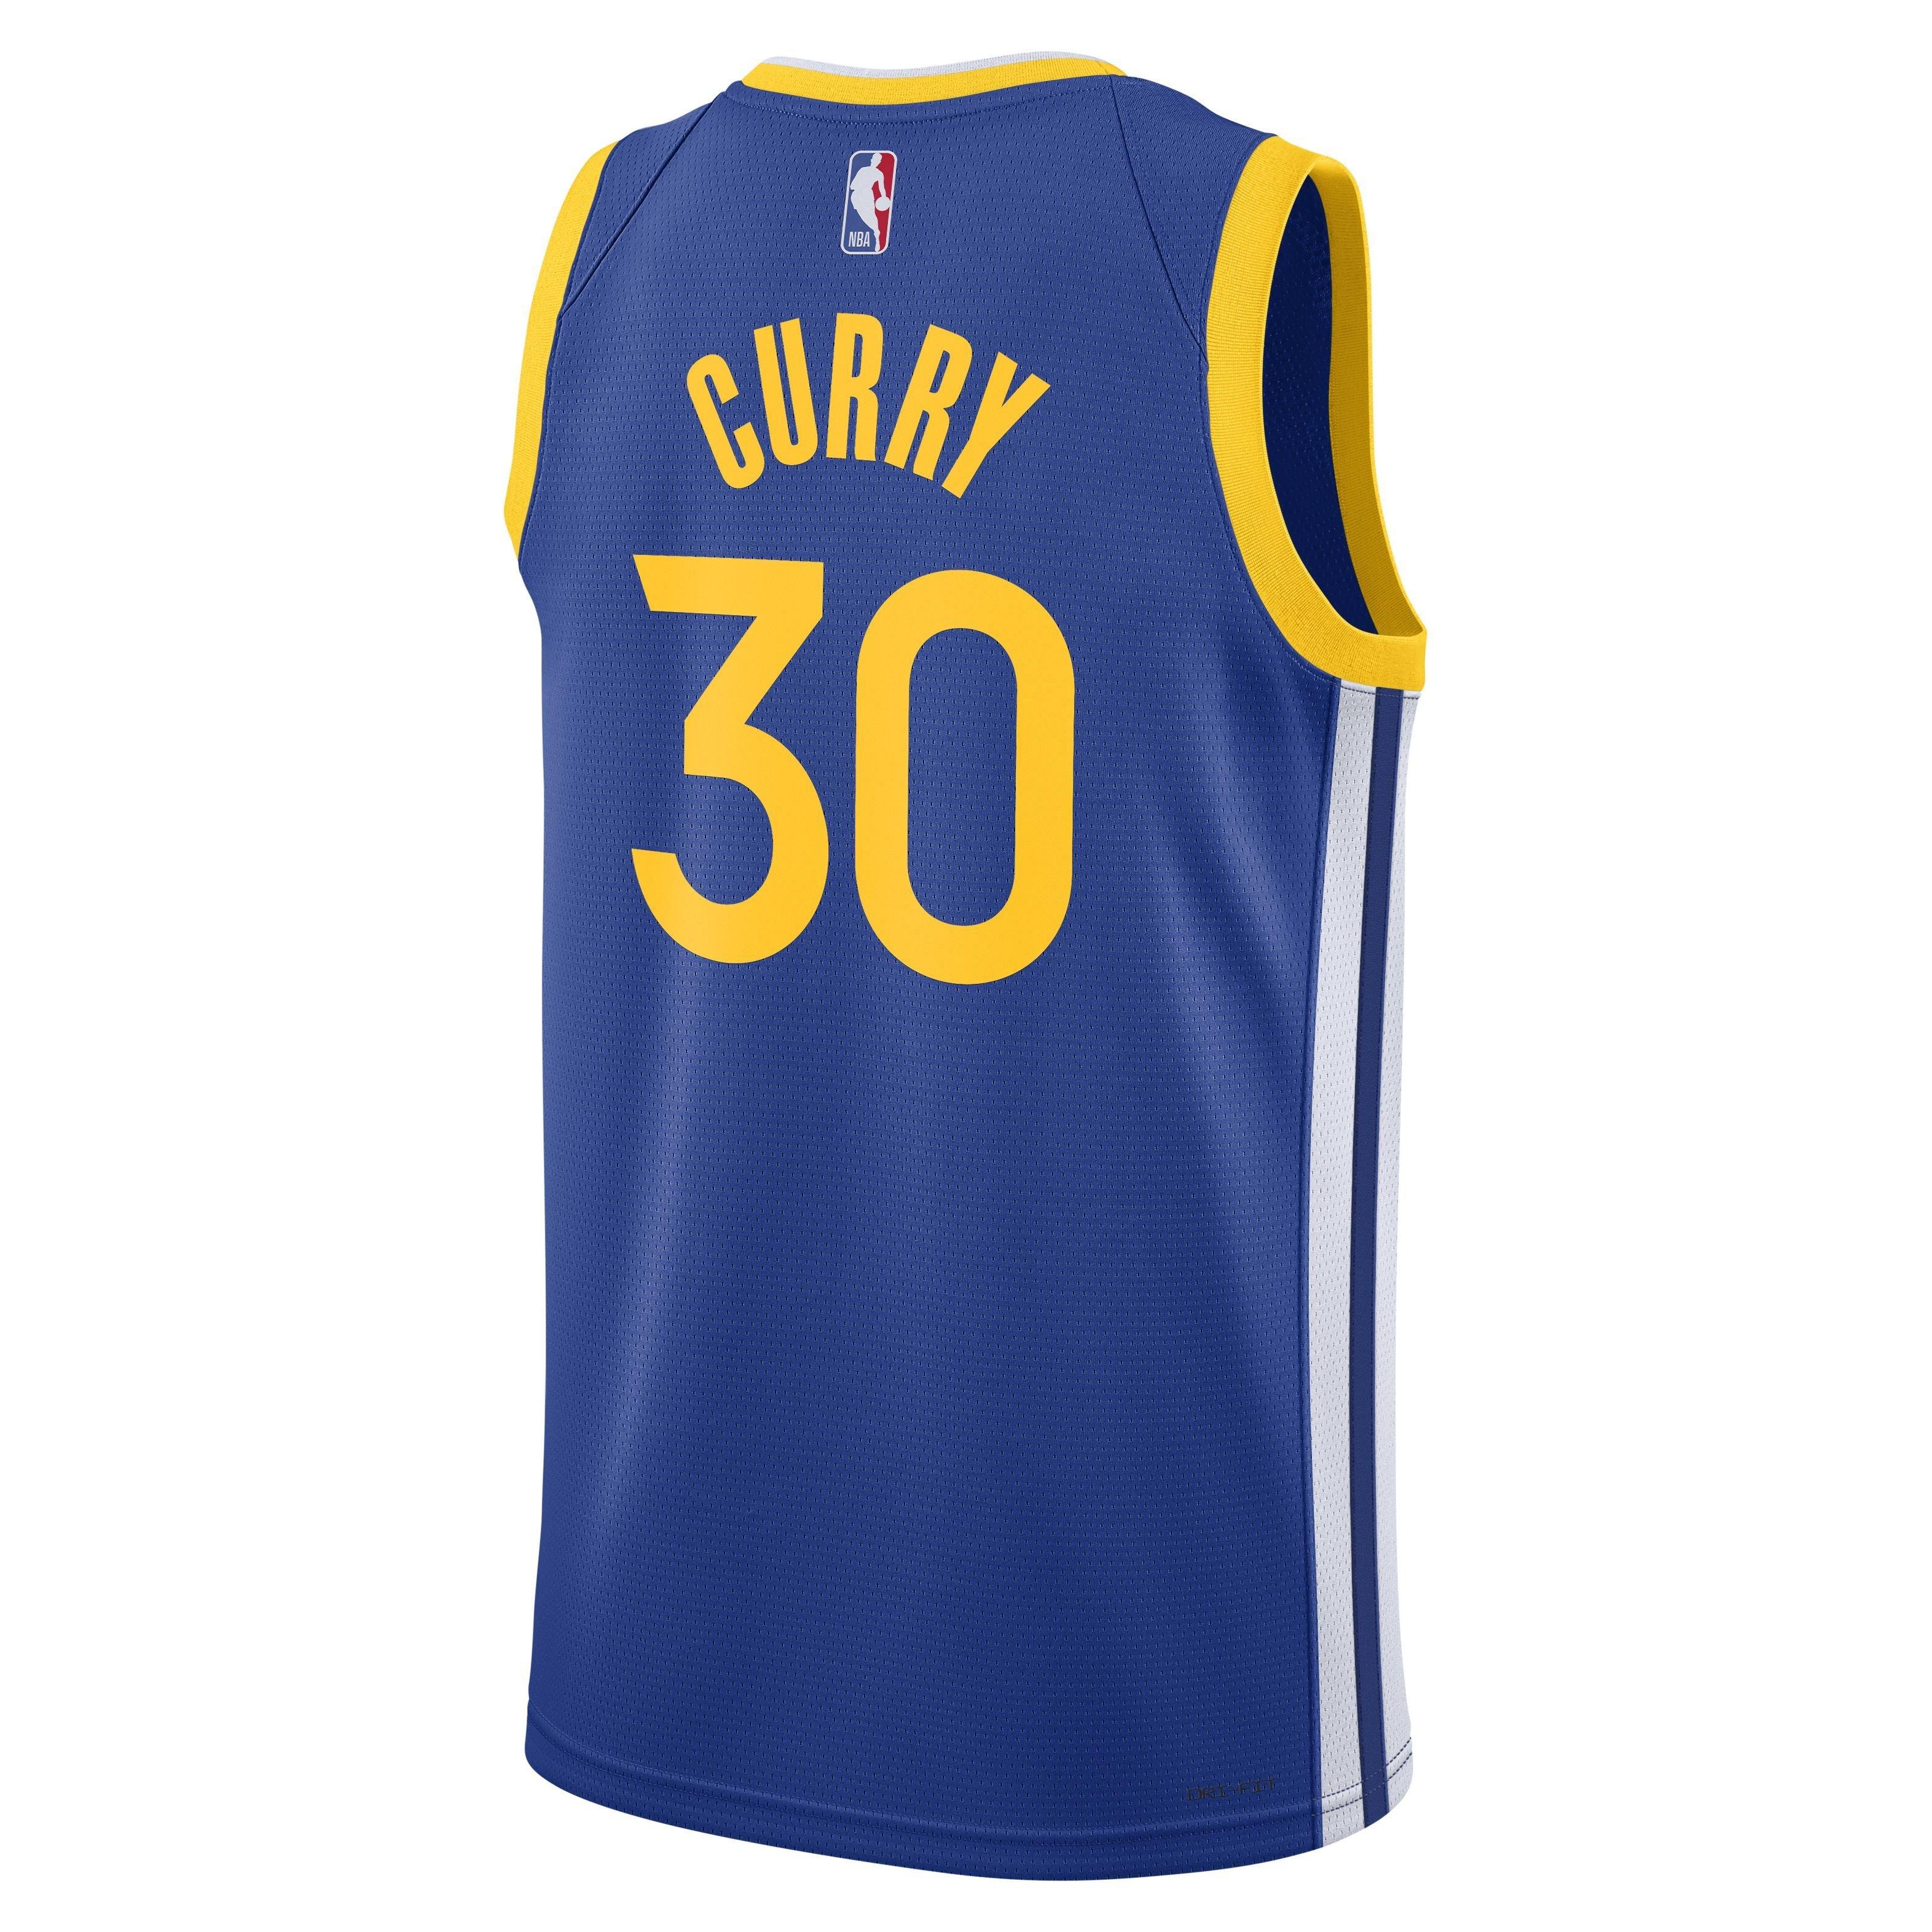 Nike / Jordan Men's Golden State Warriors Steph Curry #30 Golf Statement T- Shirt